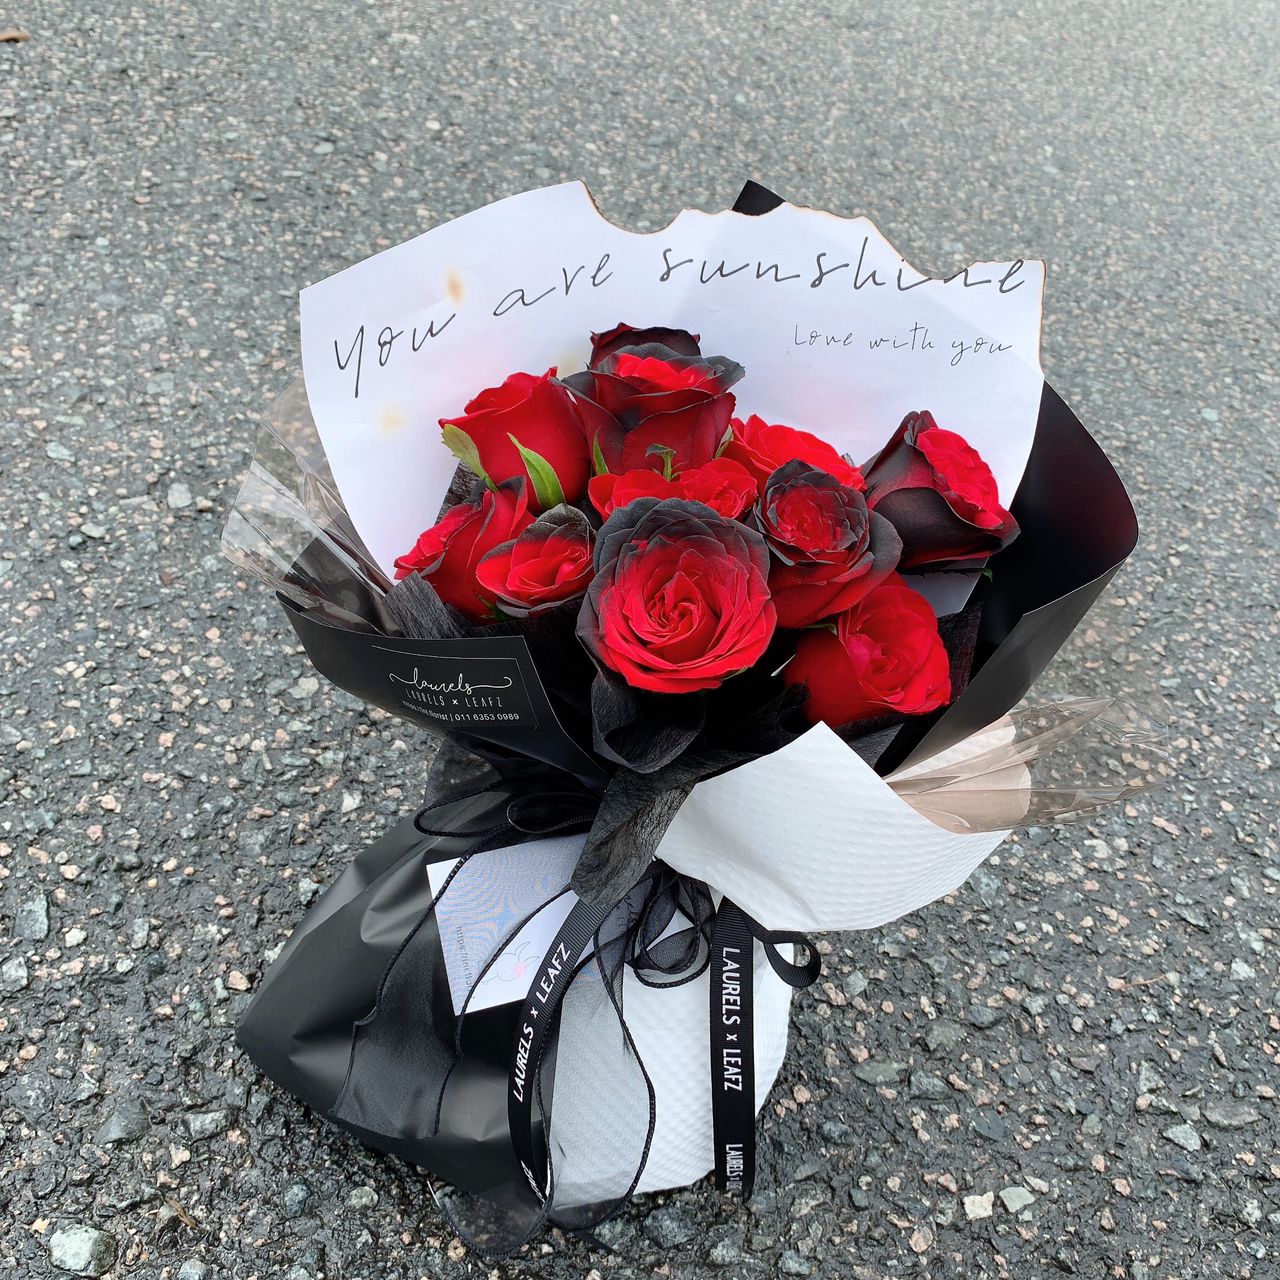 Nightfall Roses - Black Roses in Brooklyn NY - Marine Florists